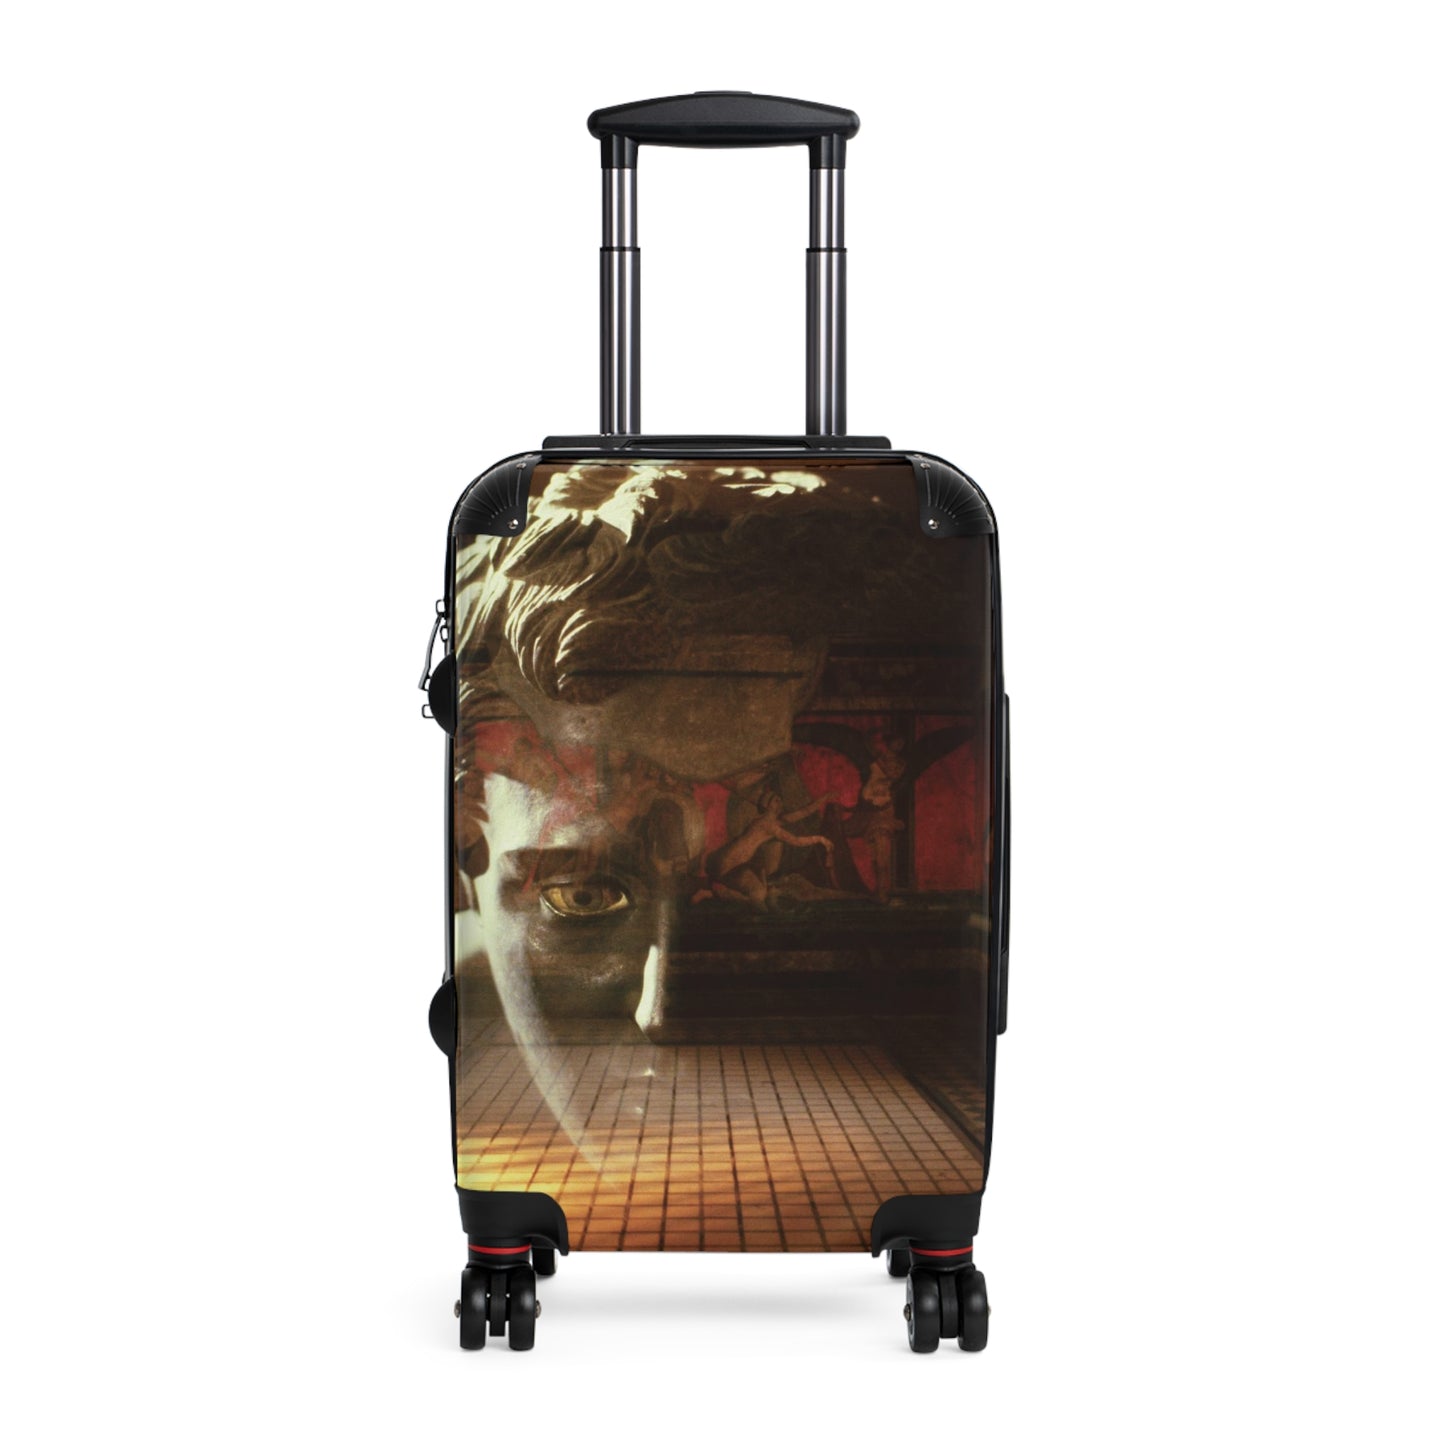 The Villa Dei Mysteries Luggage